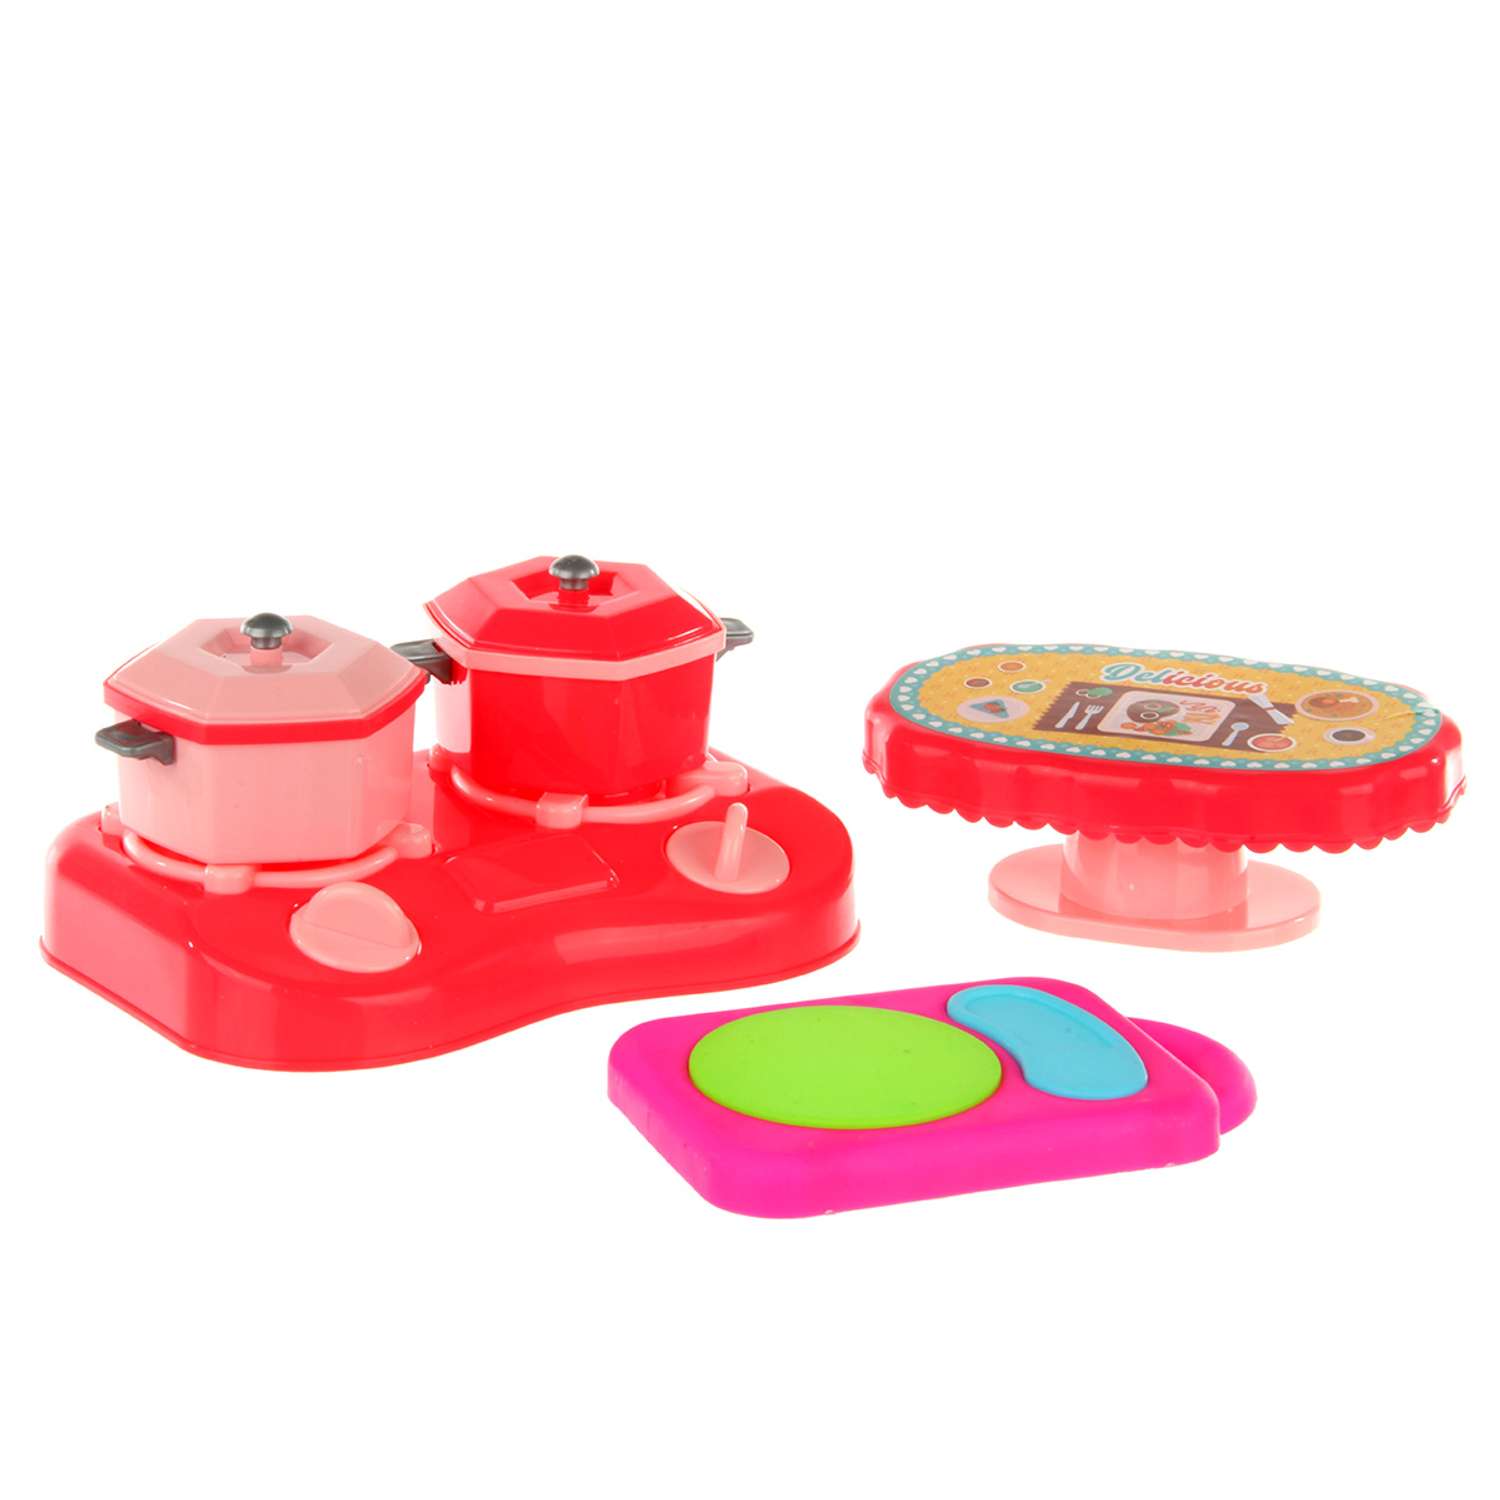 Детская посуда игрушечная Veld Co с плитой и продуктами - фото 6